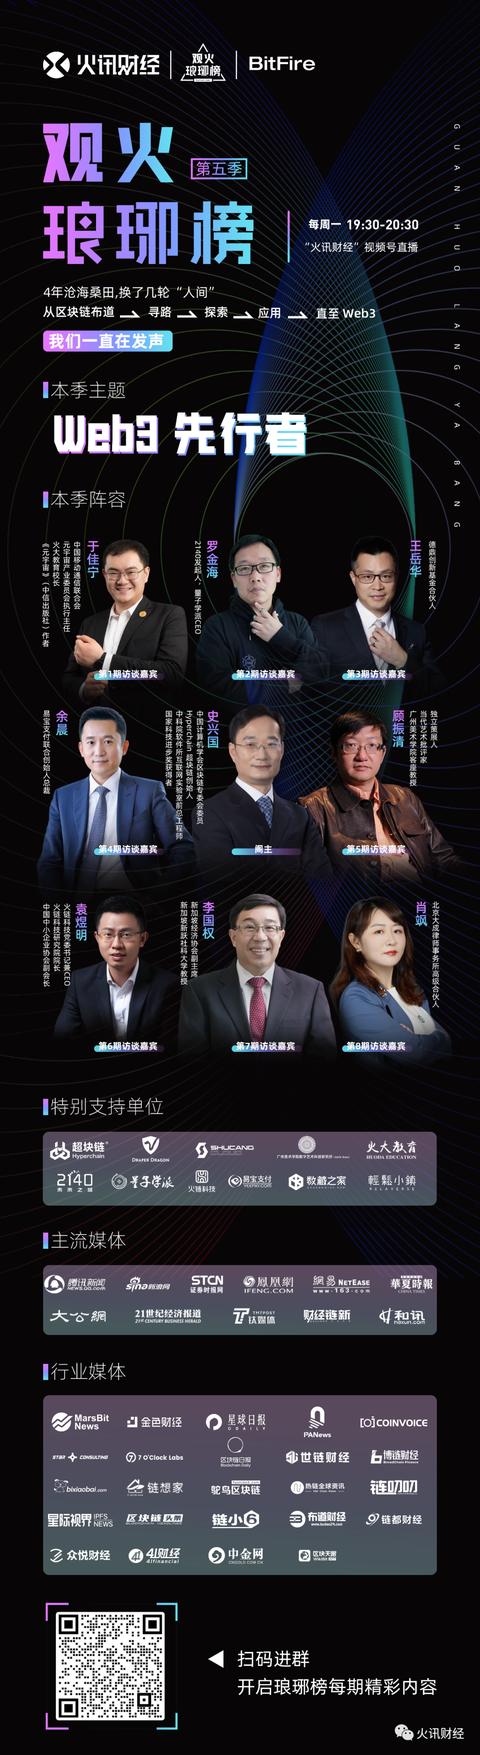 下列哪一个是中国第一代互联网创业人创造的第一大，下列哪一个是中国第一代互联网创业人物？